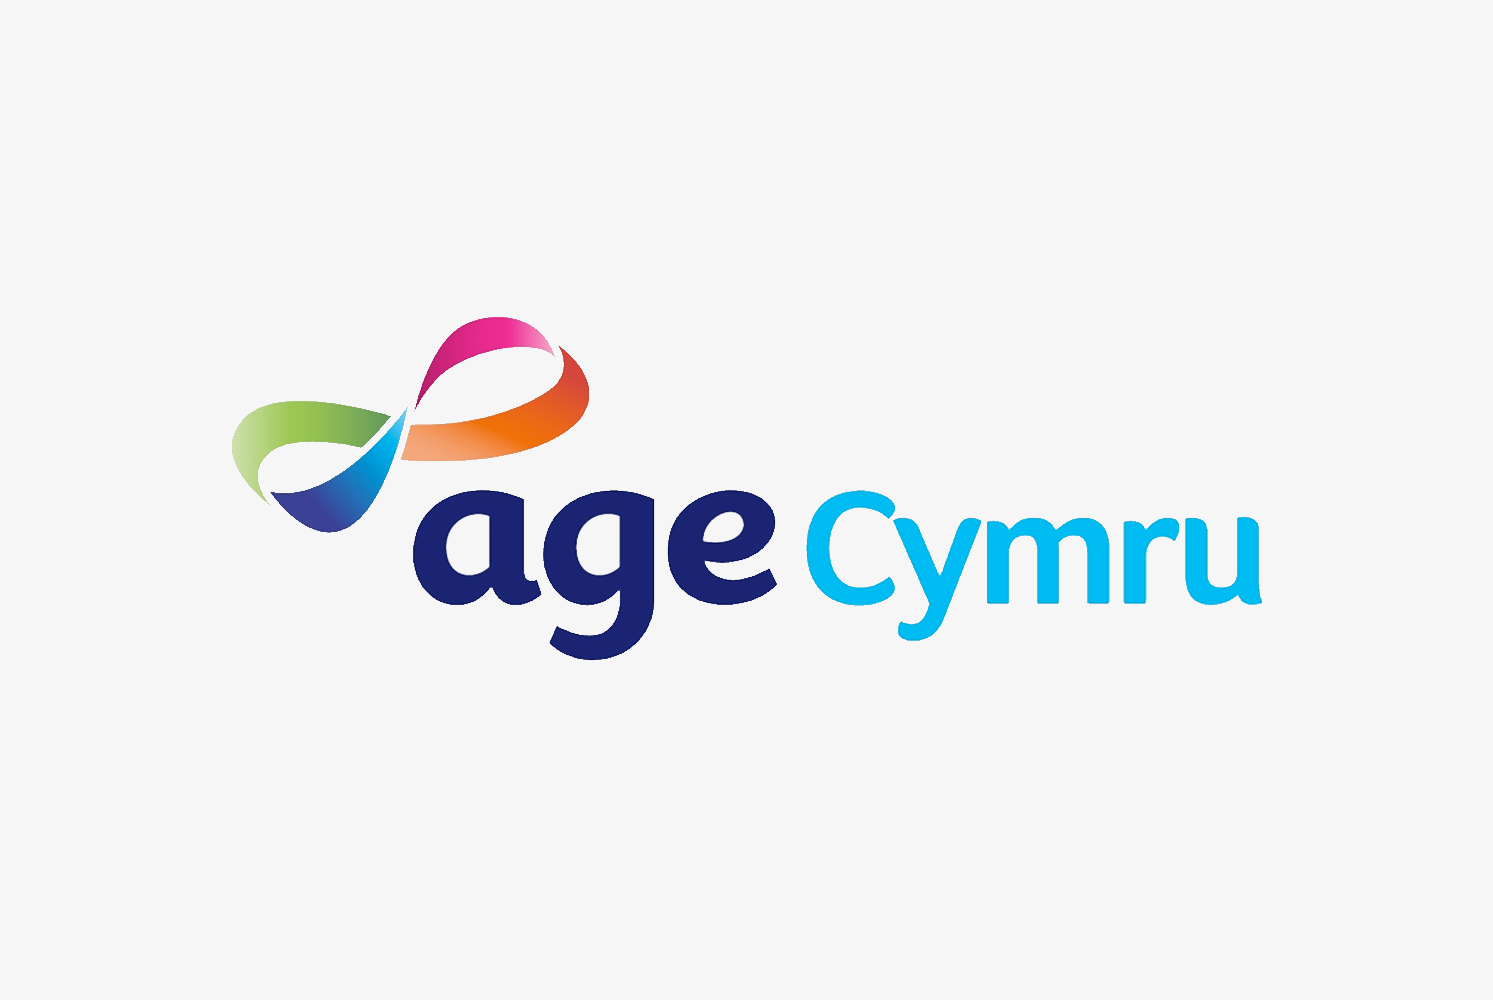 Age cymru logo